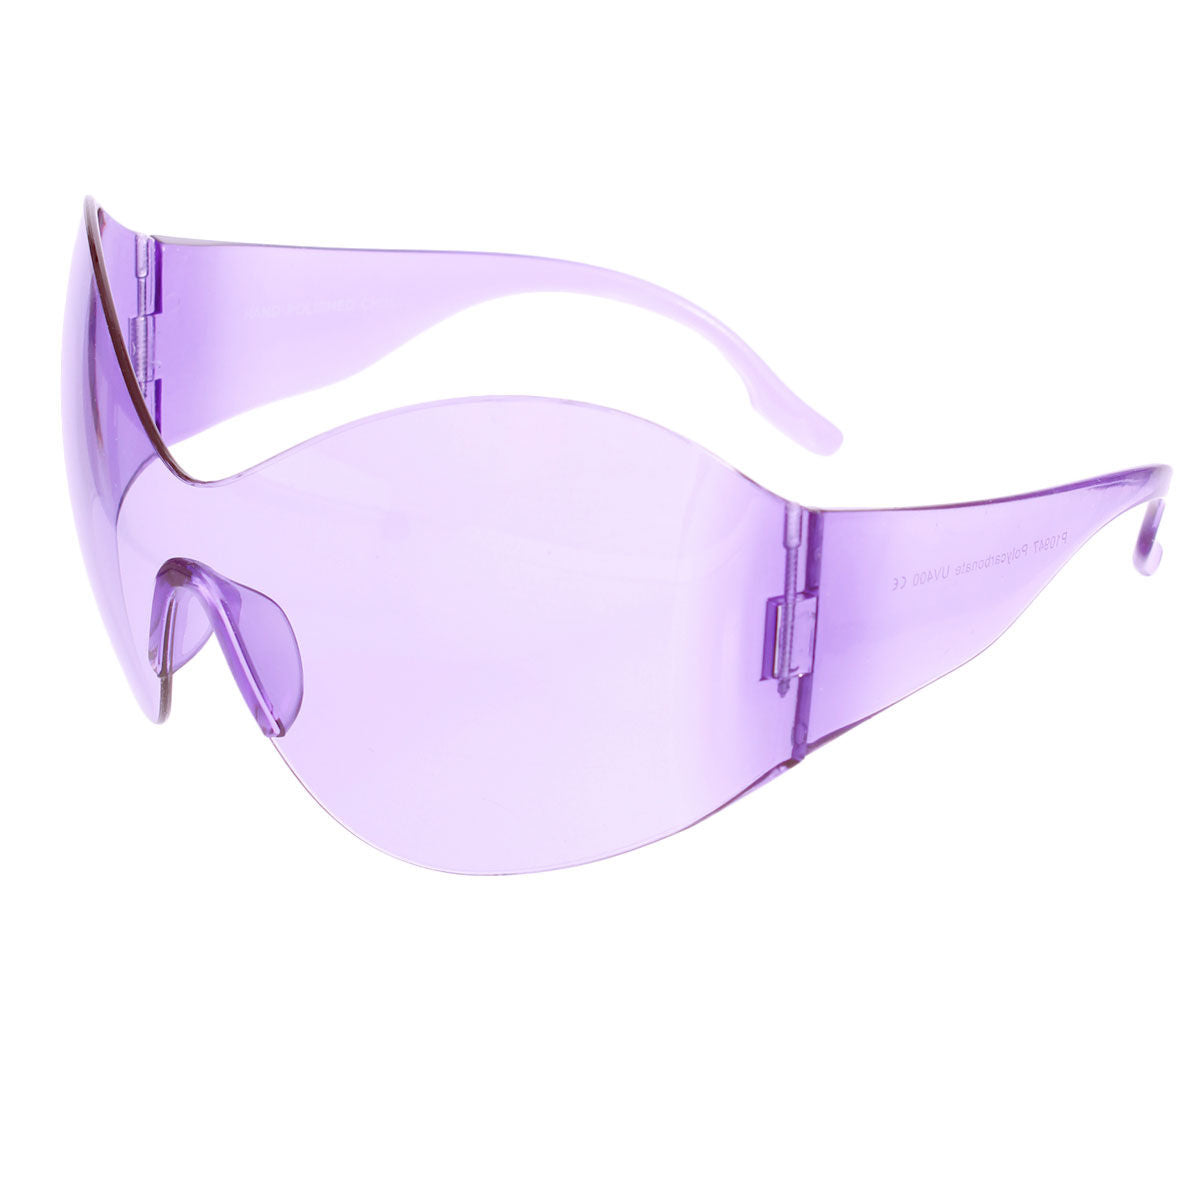 Sunglasses Butterfly Mask Purple Eyewear for Women